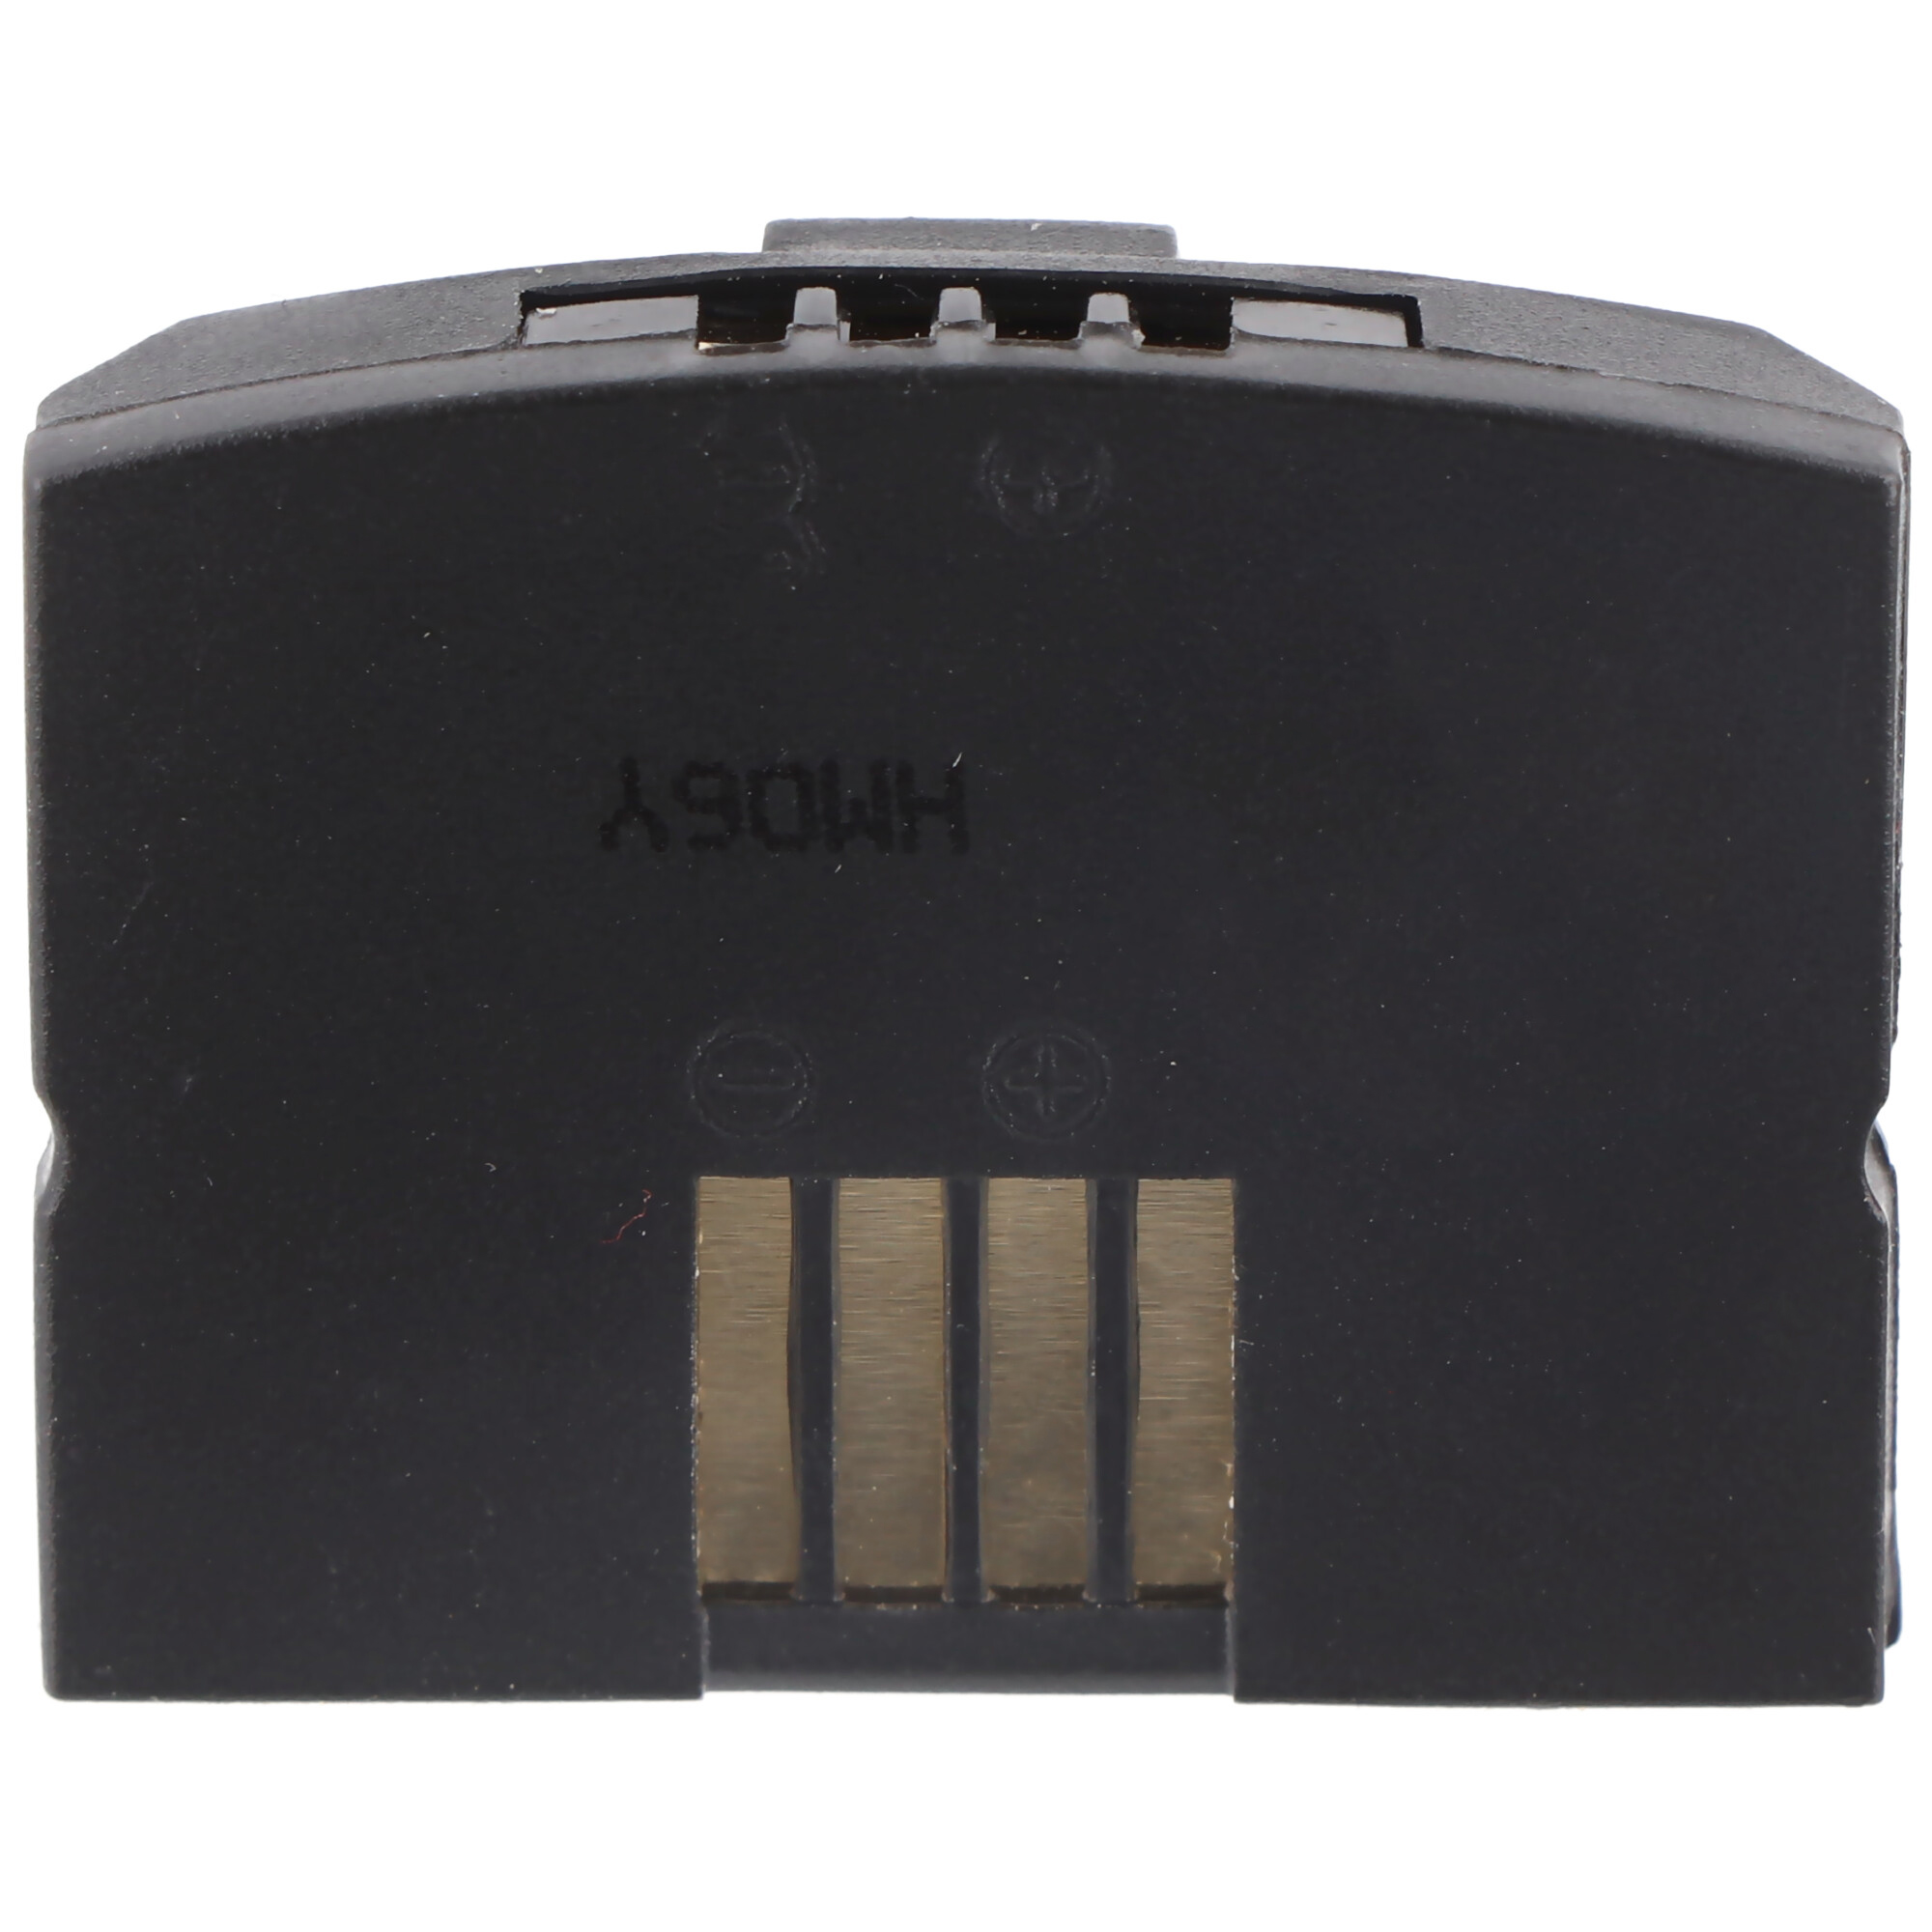 ACCUCELL Akku passend BA300, Sennheiser für mAh 410 MP3-Akku, 500898, 150 Lithium-Ionen - Li-Ion IS